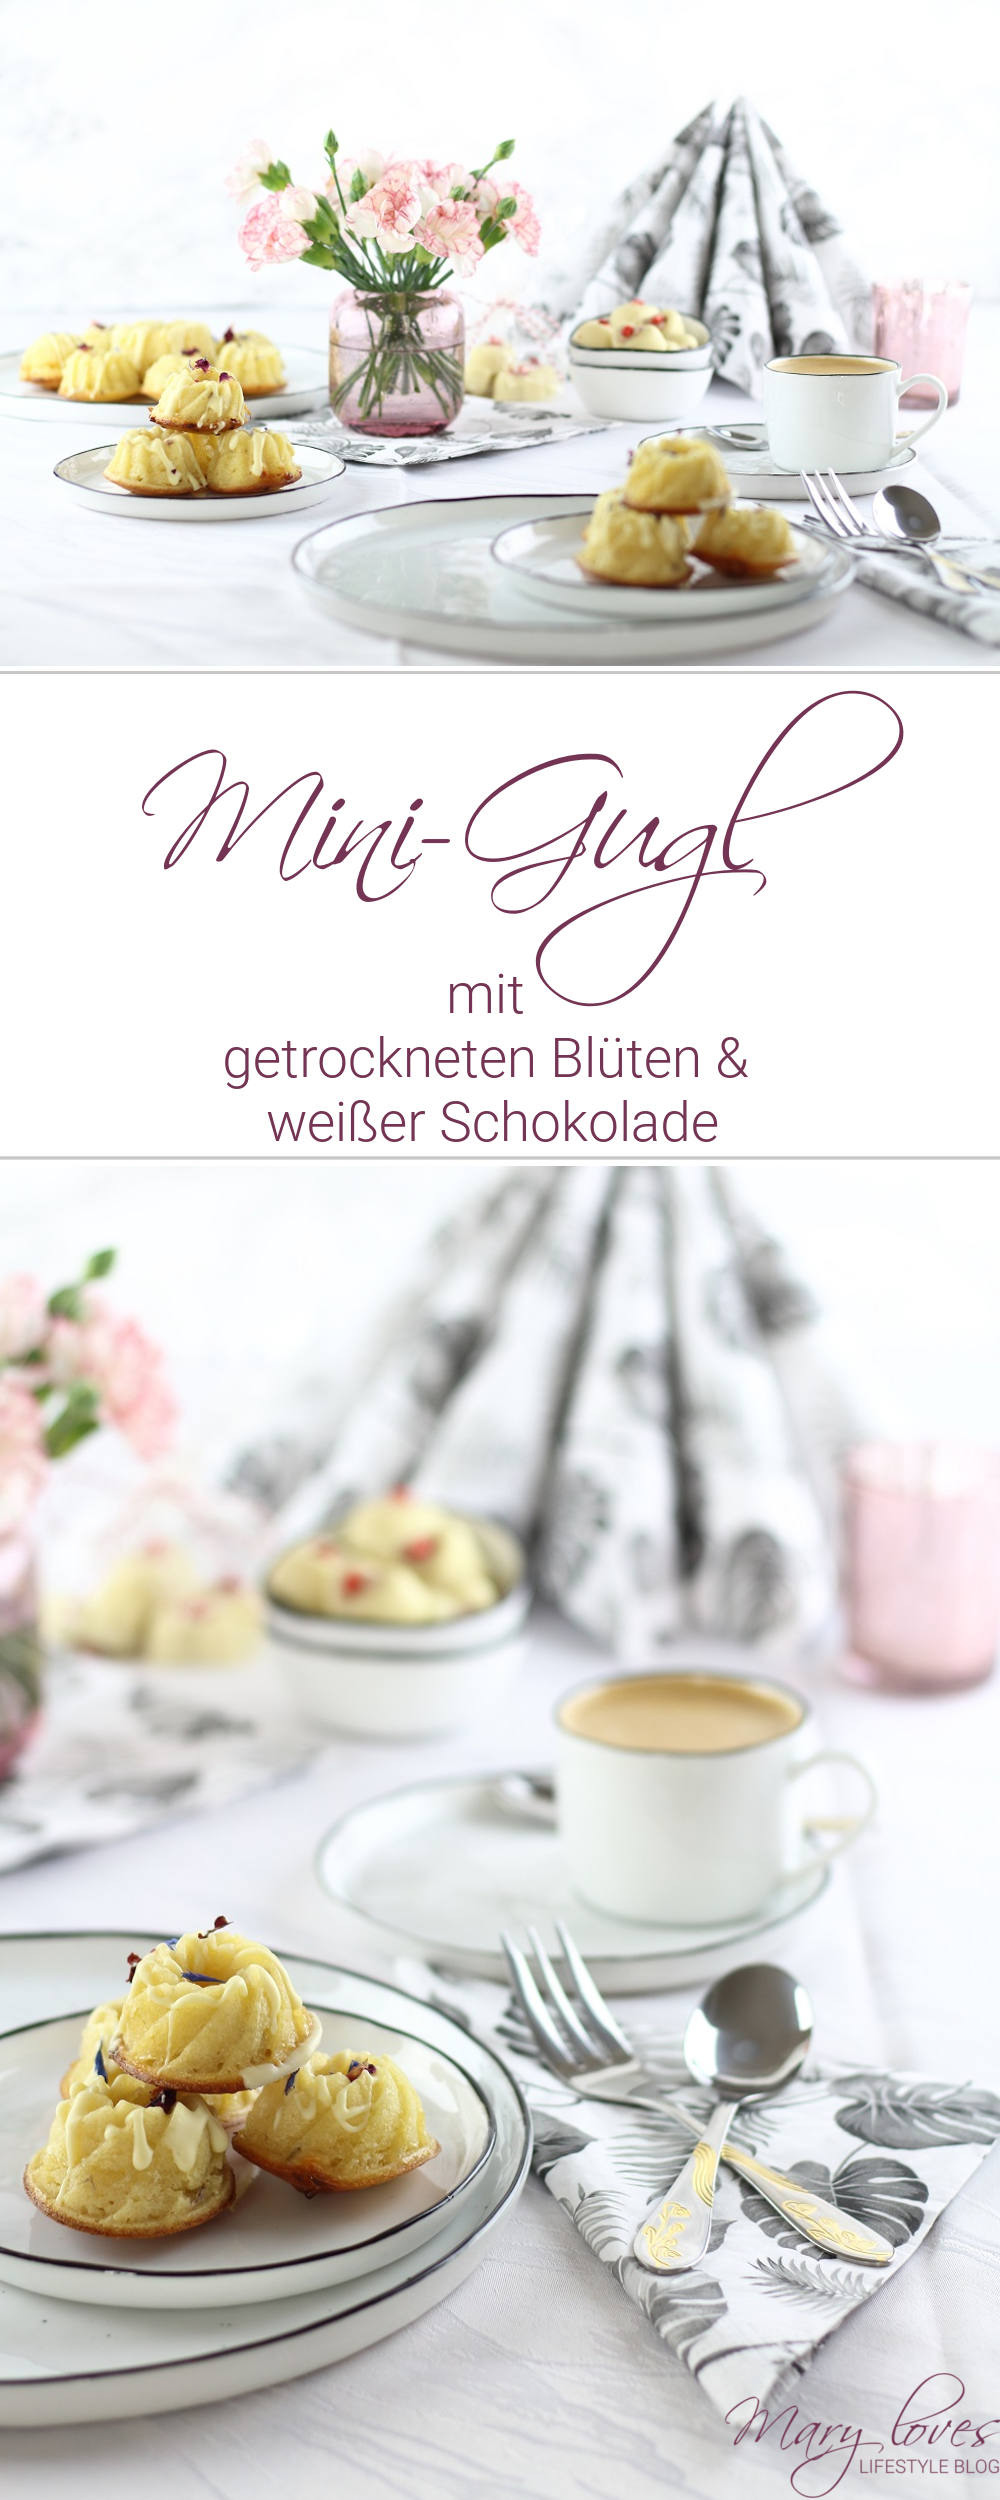 [Anzeige] Mini-Gugl mit getrockneten Blüten für den Muttertagstisch - #minigugl #muttertag #muttertagstisch #backrezept #kuchen #getrockneteblüten